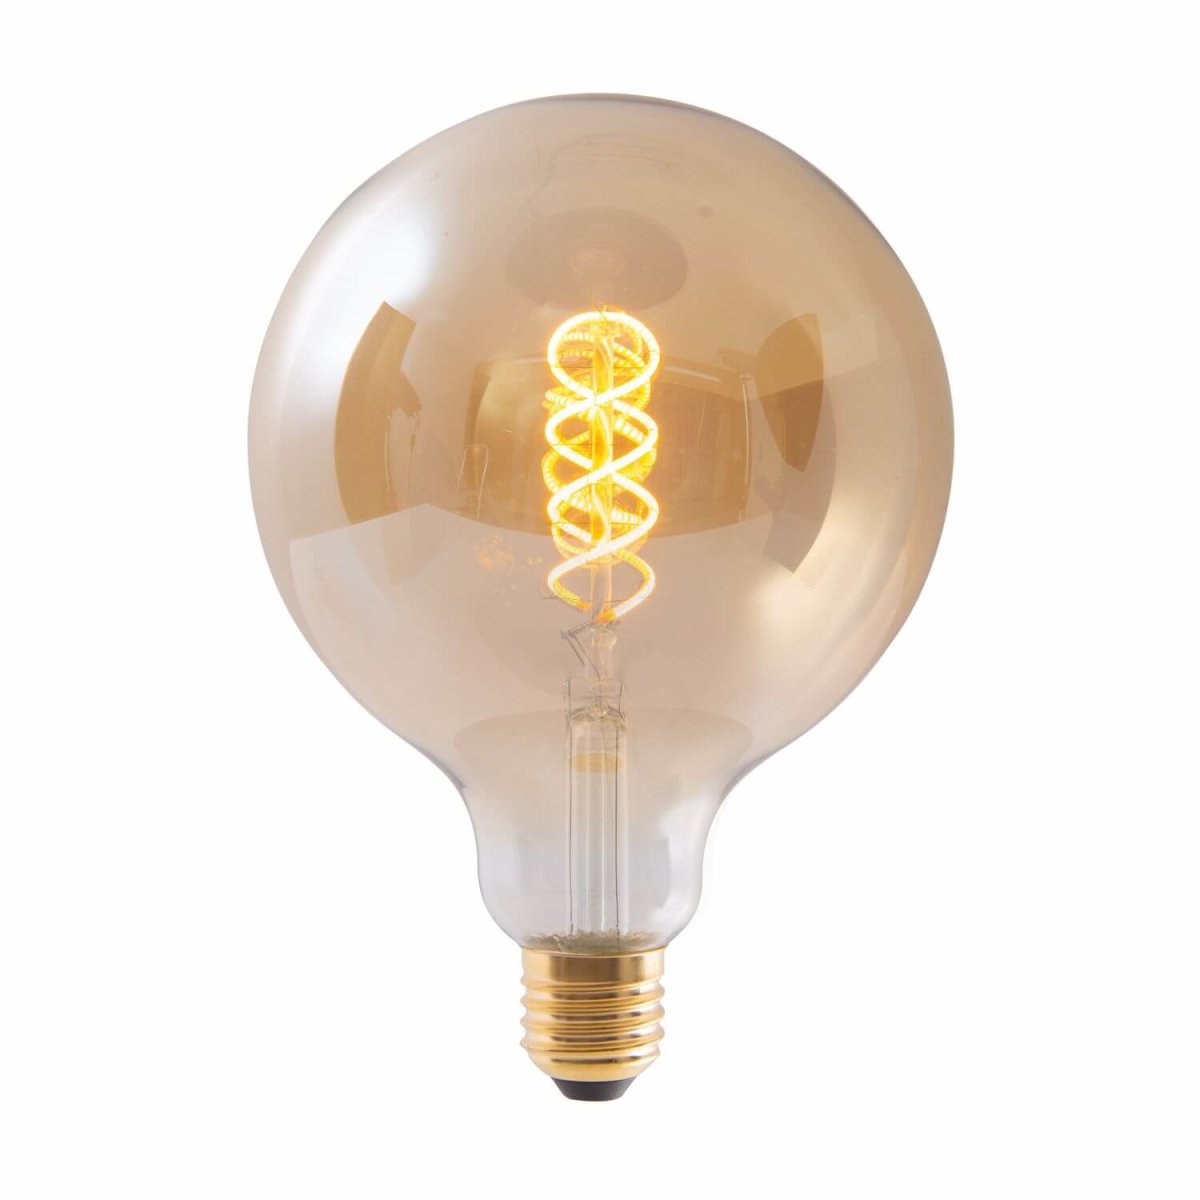 Näve E27 Leuchtmittel LED LAMPE amber dimmbar 41304 Warmweiss Ø12,5cm